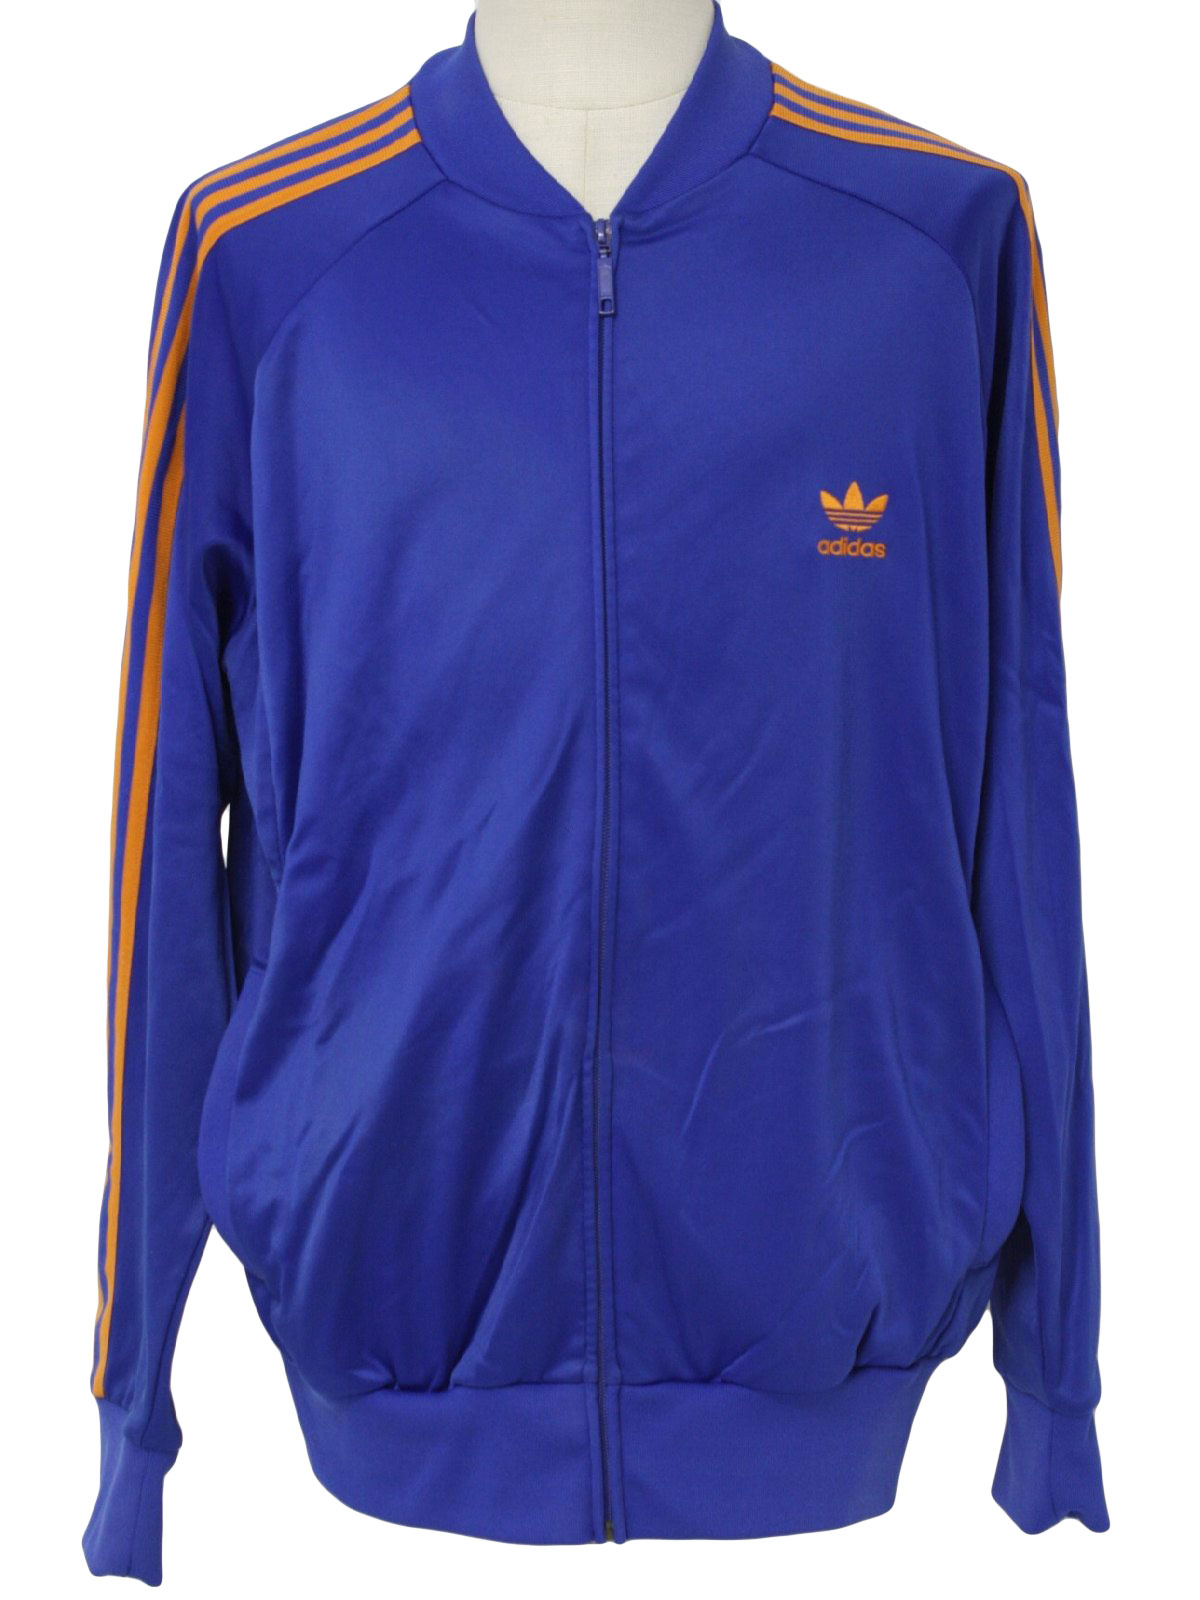 blue and orange adidas track jacket